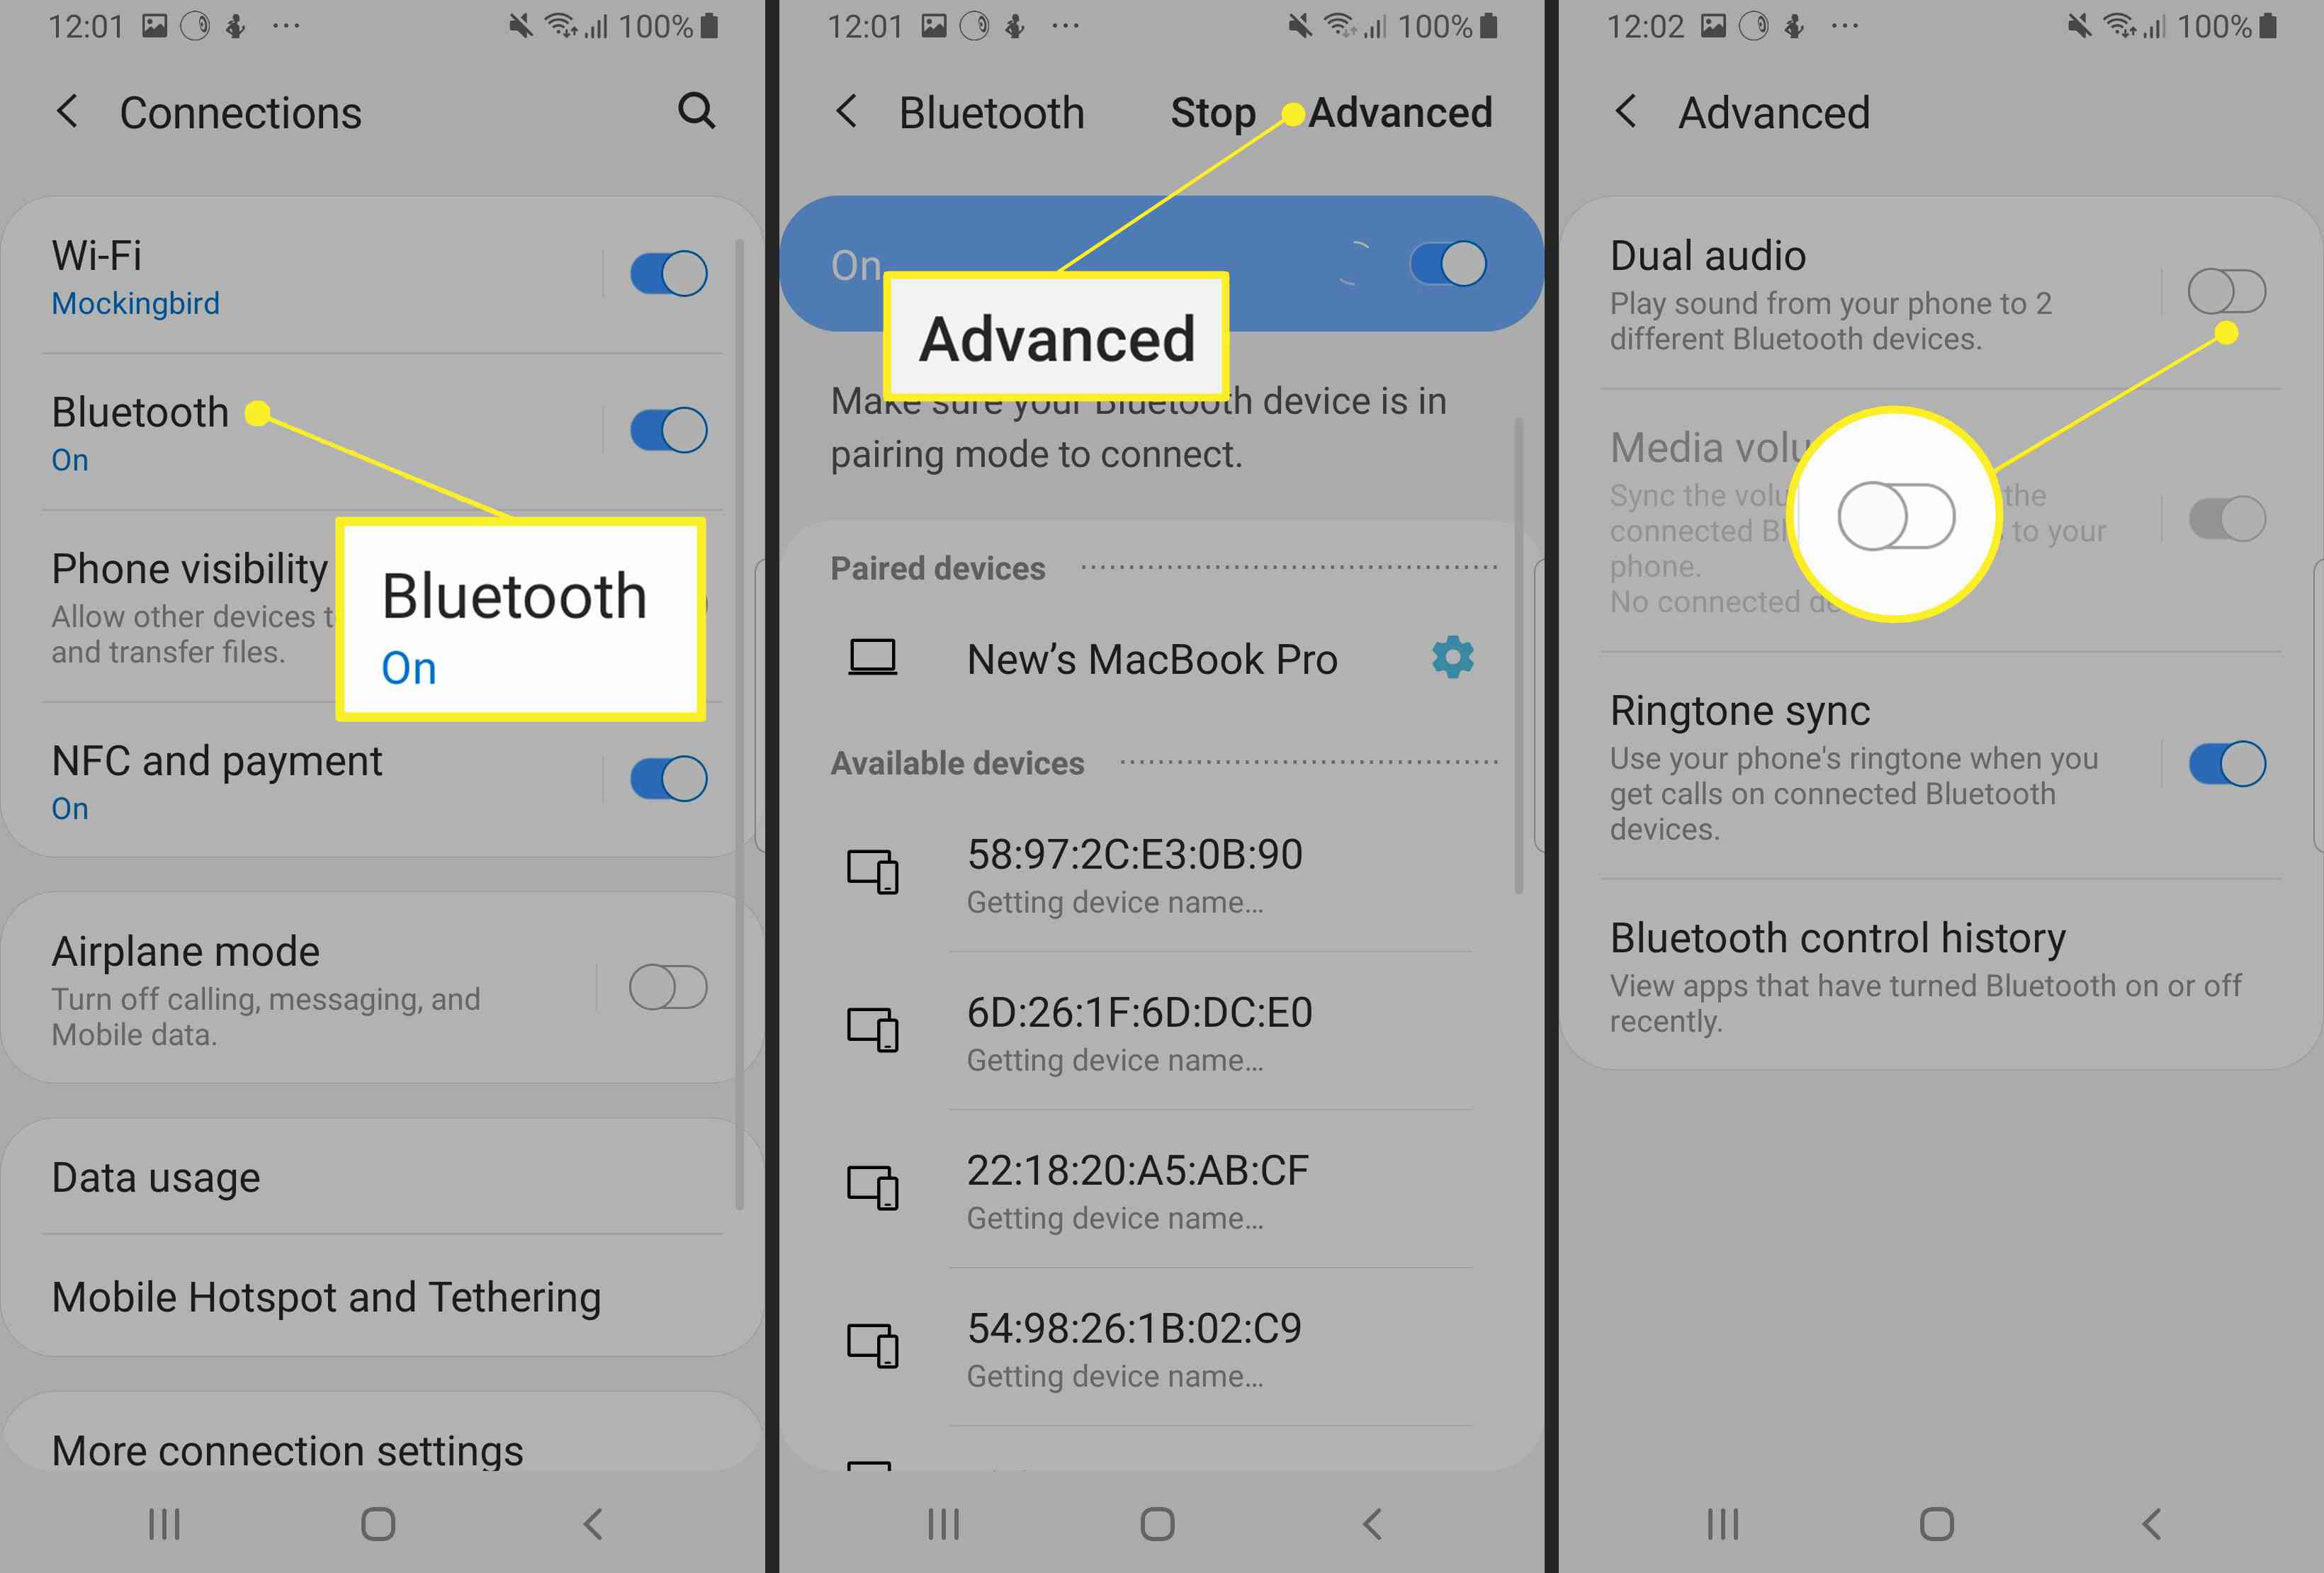 Bluetooth, Avançado, Alternar áudio duplo em Configurações Samsung> Conexões” class=”lazyload”      id=”mntl-sc-block-image_1-0-60″ ></p>
</li>
<li>
<p>Para usar o Dual Audio, emparelhe o telefone com dois alto-falantes, dois fones de ouvido ou um de cada, e o áudio será transmitido para ambos.</p>
</li>
<li>
<p>Se você adicionar um terceiro, o primeiro dispositivo emparelhado será inicializado.</p>
</li>
</ol>
<p>Se você conectar seu Samsung com dois conjuntos de fones de ouvido, apenas o primeiro dispositivo conectado poderá gerenciar a reprodução usando os controles de mídia nos fones de ouvido.  Você também pode encontrar alto-falantes Bluetooth fora de sincronia, portanto, esse recurso é melhor para alto-falantes localizados em salas separadas.</p>
<p><span></span> </p>
<h2> <span>  Use par estéreo HomePod </span> </h2>
<p>A Apple tem um recurso semelhante ao Dual Audio da Samsung, chamado HomePod Stereo Pair, que permite aos usuários emparelhar um iPhone ou Mac com dois alto-falantes HomePod.  O par estéreo HomePod requer um iPhone com pelo menos iOS 11.4 ou um Mac com macOS Mojave ou posterior.  Você também precisará de alto-falantes HomePod com iOS 11.4 ou posterior.  Ao configurar um HomePod na mesma sala que outro, você terá a opção de usar os alto-falantes como um par estéreo.  Você também pode usar o aplicativo Home para configurar esse recurso em um iPhone, iPad, iPod touch ou Mac.  Em qualquer um dos casos, os dois HomePods devem estar na mesma sala para os emparelhar.</p>
<ol>
<li>
<p>Abra o app Home, clique duas vezes ou mantenha pressionado <strong>HomePod</strong>e clique ou toque em <strong>Definições</strong>.</p>
</li>
<li>
<p>Clique ou toque <strong>Criar par estéreo</strong>.</p>
</li>
<li>
<p>Selecione uma <strong>segundo HomePod</strong>.</p>
</li>
<li>
<p>Você verá dois ícones HomePod no aplicativo.  Toque ou clique em um HomePod para mapeá-lo para o canal correto (direito e esquerdo).</p>
</li>
<li>
<p>Clique ou toque <strong>Voltar</strong>, então <strong>Feito</strong>.</p>
</li>
</ol>
<p>Precisa de mais alto-falantes para conectar e tornar sua casa uma meca da música?  Esta lista pode ajudar.</p>
<h3> <span>  perguntas frequentes </span> </h3>
<ul>
<li><strong>Posso conectar os alto-falantes Bluetooth do meu iPhone que não sejam HomePods? </strong>Há uma variedade de aplicativos na App Store que afirmam conectar iPhones a vários dispositivos Bluetooth;  leia as avaliações e escolha um produto de qualidade que funcione para você.  Outra opção é usar alto-falantes habilitados para AirPlay.<strong> </strong></li>
<li><strong>Como faço para conectar o Google Home aos alto-falantes Bluetooth? </strong>Você usará o app Google Home para conectar o Google Home aos alto-falantes Bluetooth.  Selecione o seu dispositivo> <strong>Definições</strong> > <strong>Alto-falante de música padrão</strong>.  Emparelhe seu alto-falante Bluetooth e siga as instruções.</li>
<li><strong>Como posso melhorar o som de vários alto-falantes conectados?</strong> Para tornar o som do Bluetooth proveniente de vários alto-falantes mais alto e claro, considere aplicativos de amplificação de software e aplicativos de reforço de alto-falante.  Além disso, tente mover os alto-falantes conectados para longe de obstruções na sala.</li>
</ul>
</p>		<div class=